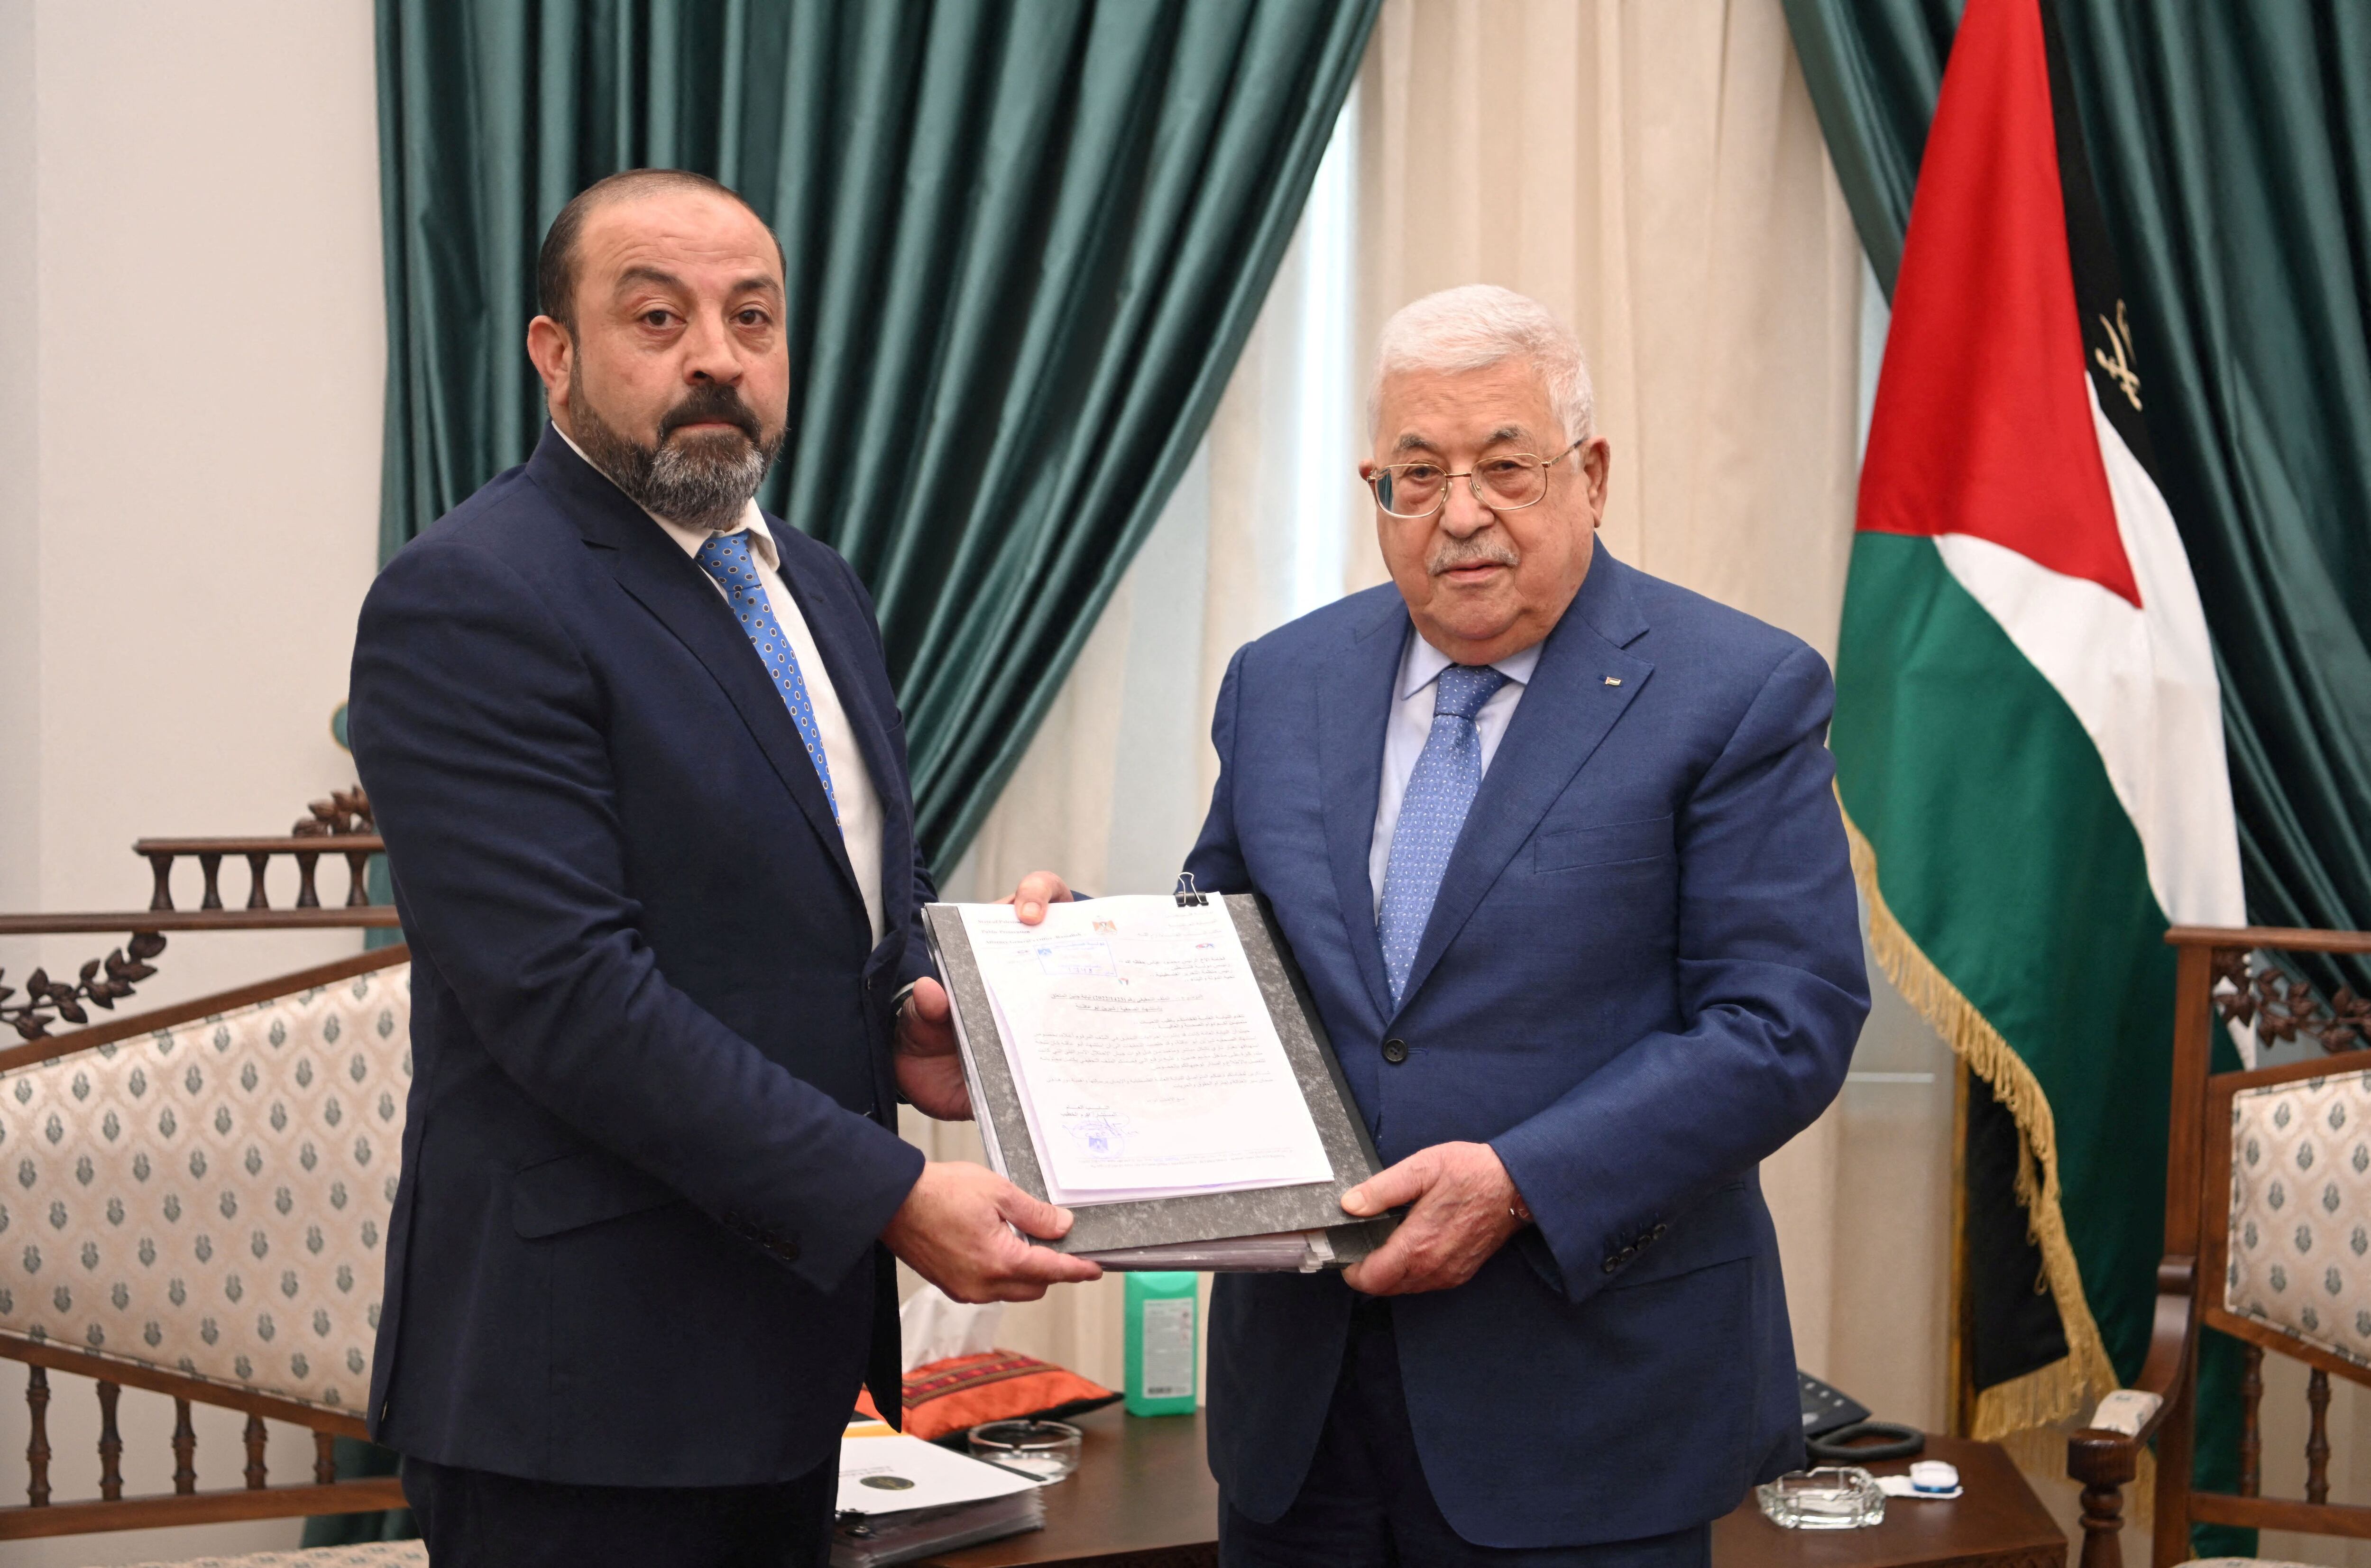 El fiscal general palestino, Akram al Jatib, entrega el informe de la autopsia de Shireen Abu Akleh al presidente palestino, Mahmud Abbas (derecha), el jueves en Ramala.